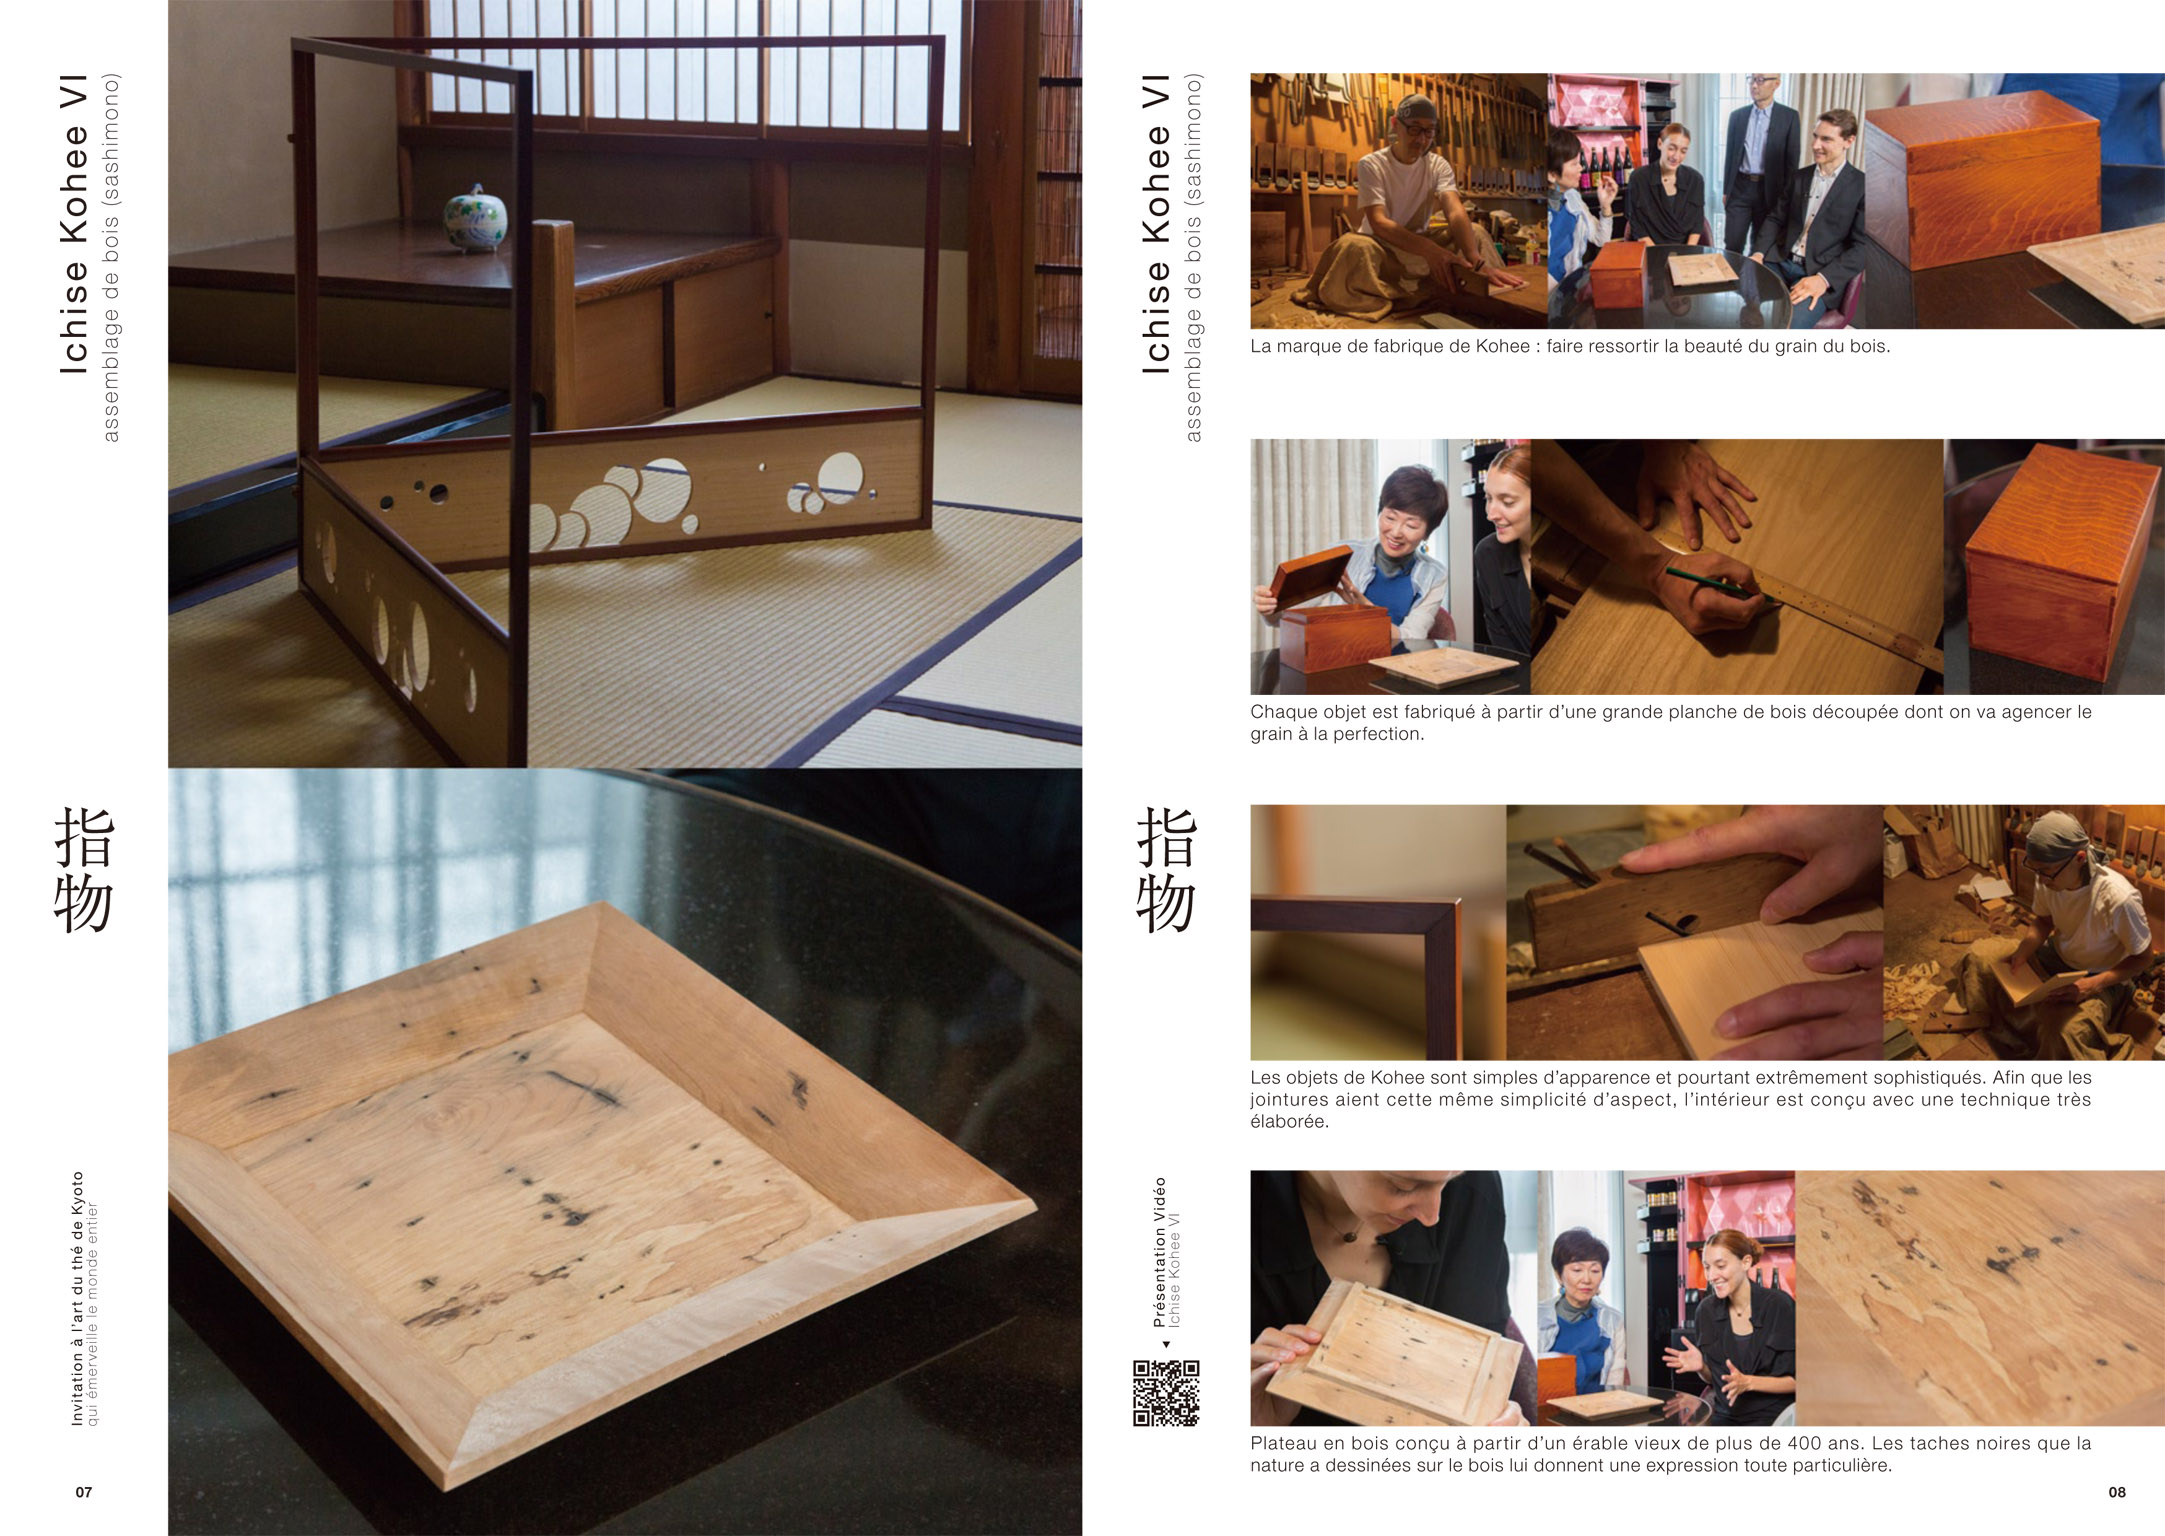 京都 茶の湯への誘い 冊子